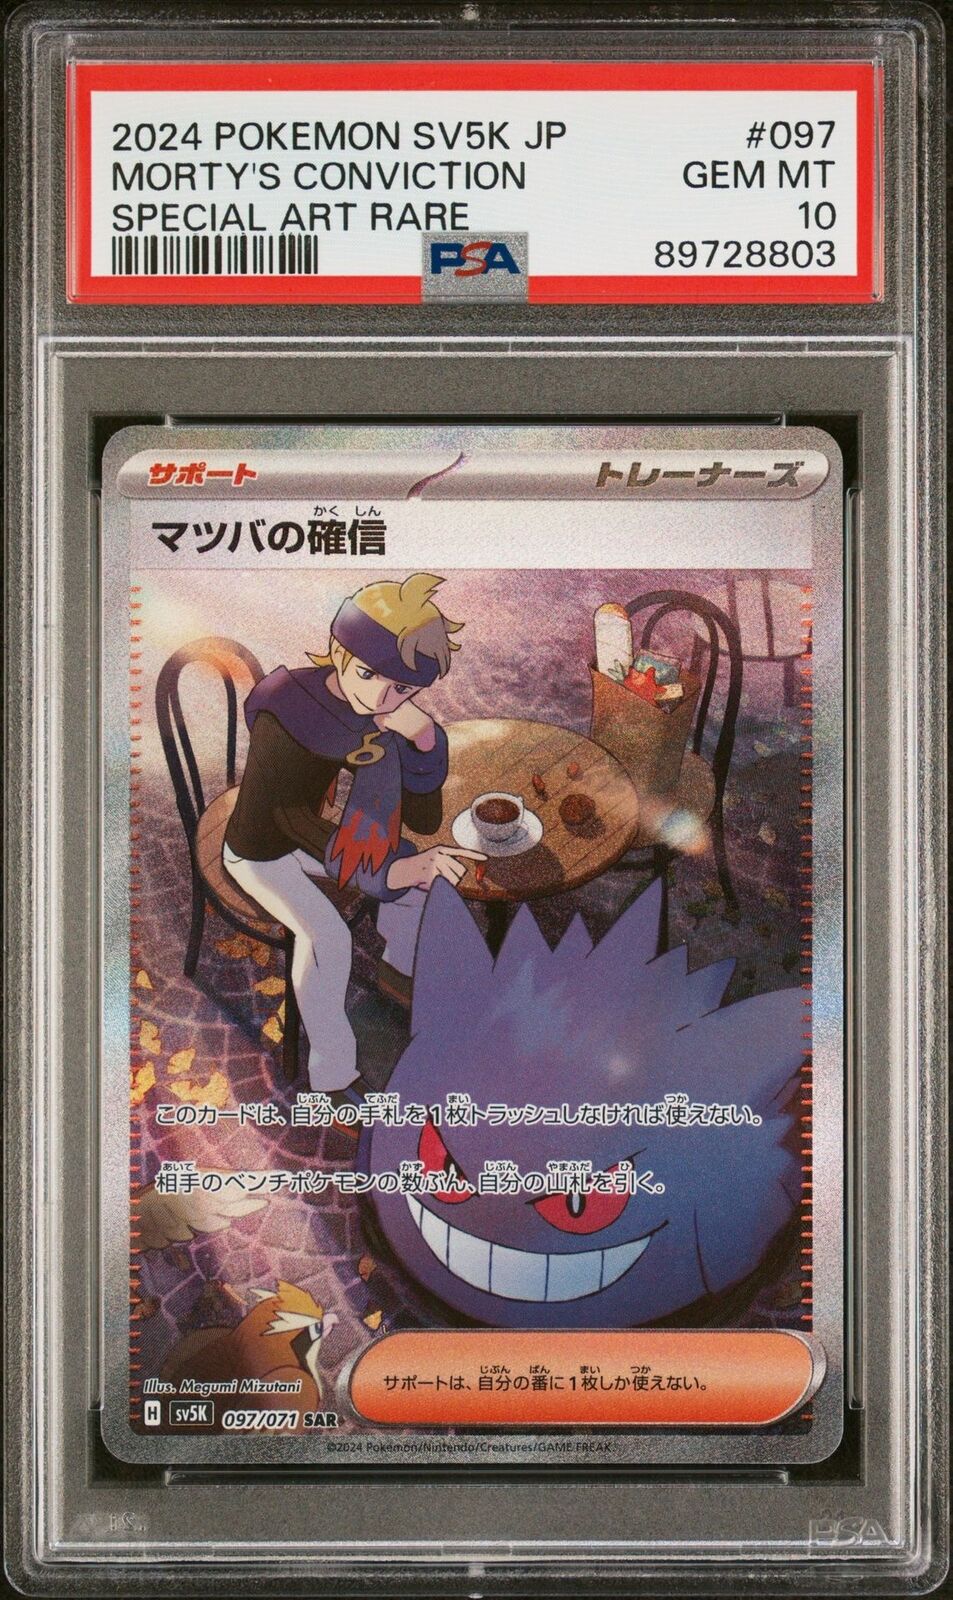 PSA 10 GEM MINT Japanese Pokemon Card Morty's Confidence 097/071 